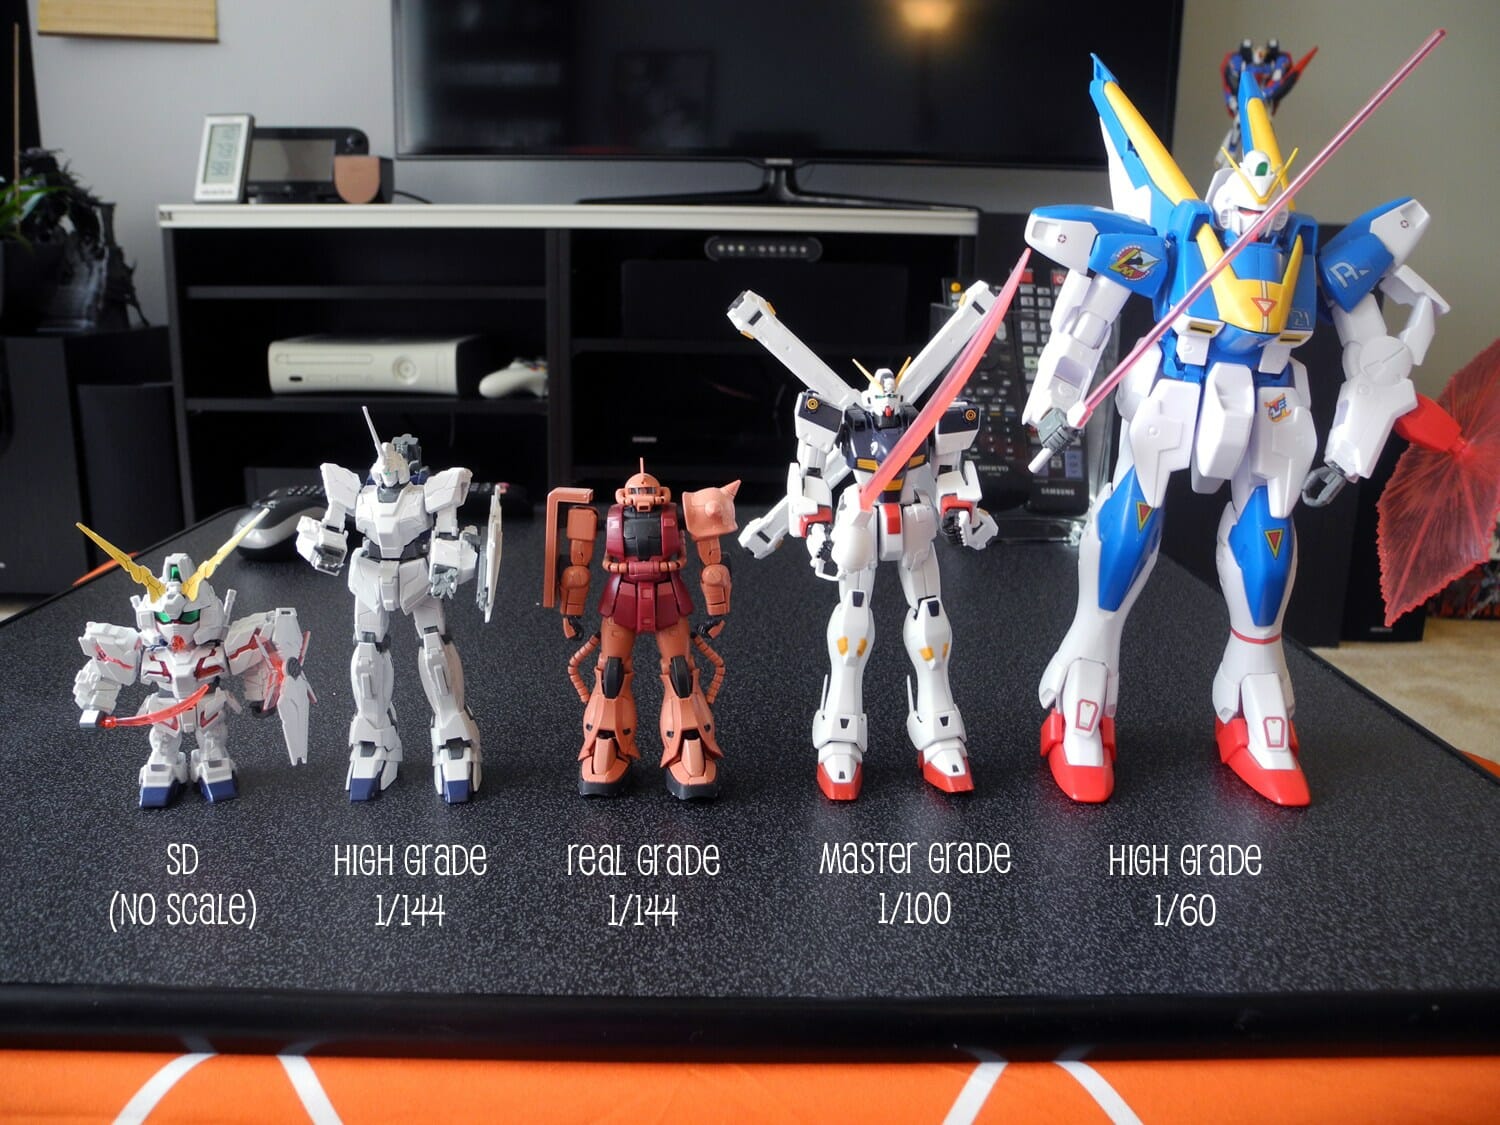 Bán Buôn Nhựa Mini Gạch Hành Động Hình Khối Mô Hình Gundam Đồ Chơi  Buy  Bán Buôn GundamGundamGundam Mô Hình Product on Alibabacom